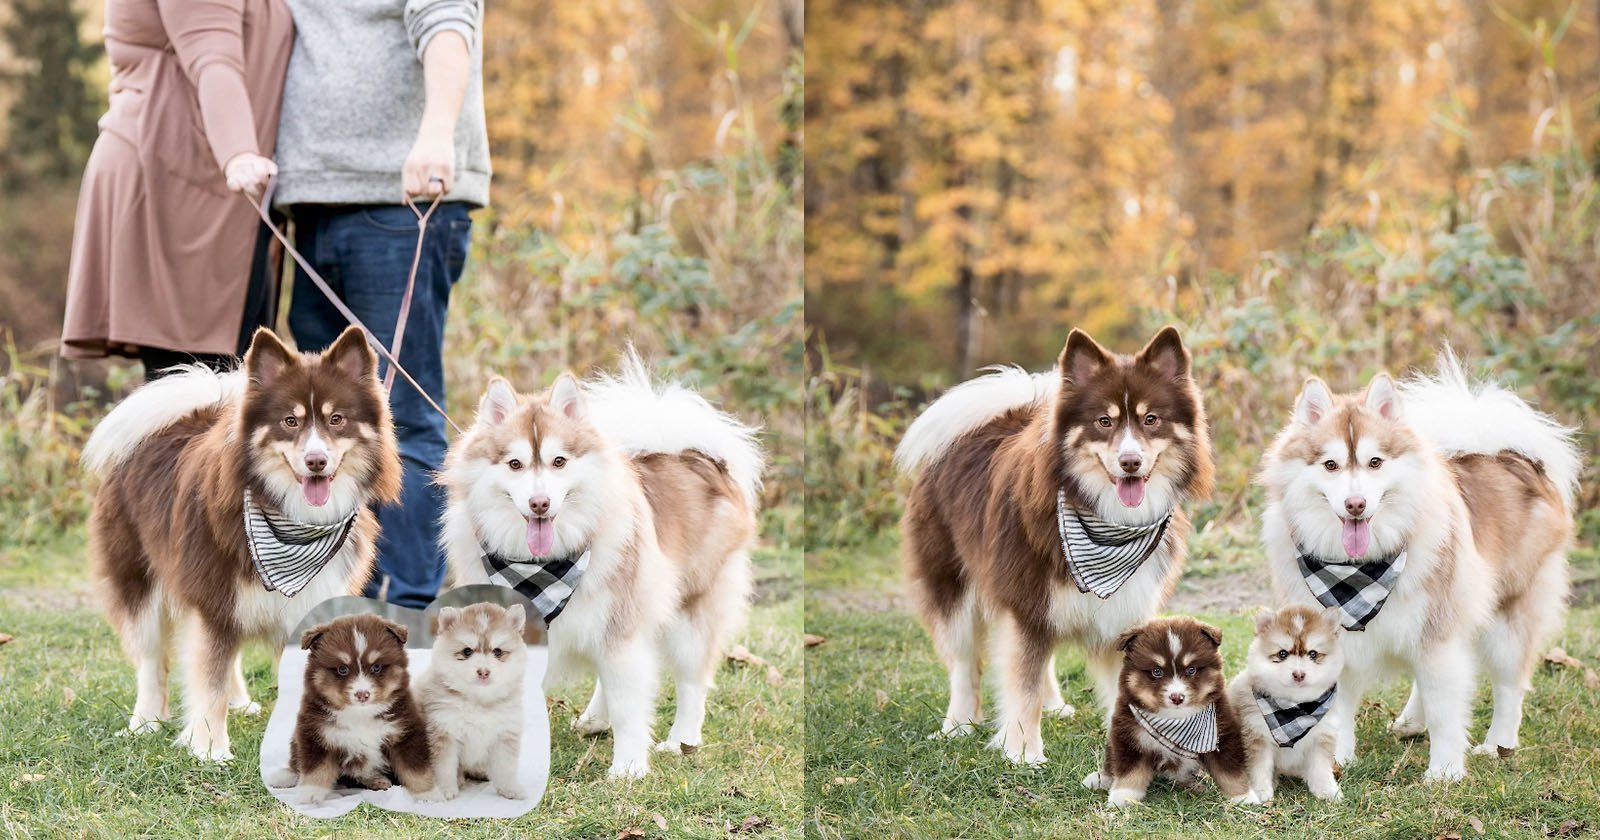  how photo editor made 100 000 photoshopping dog 